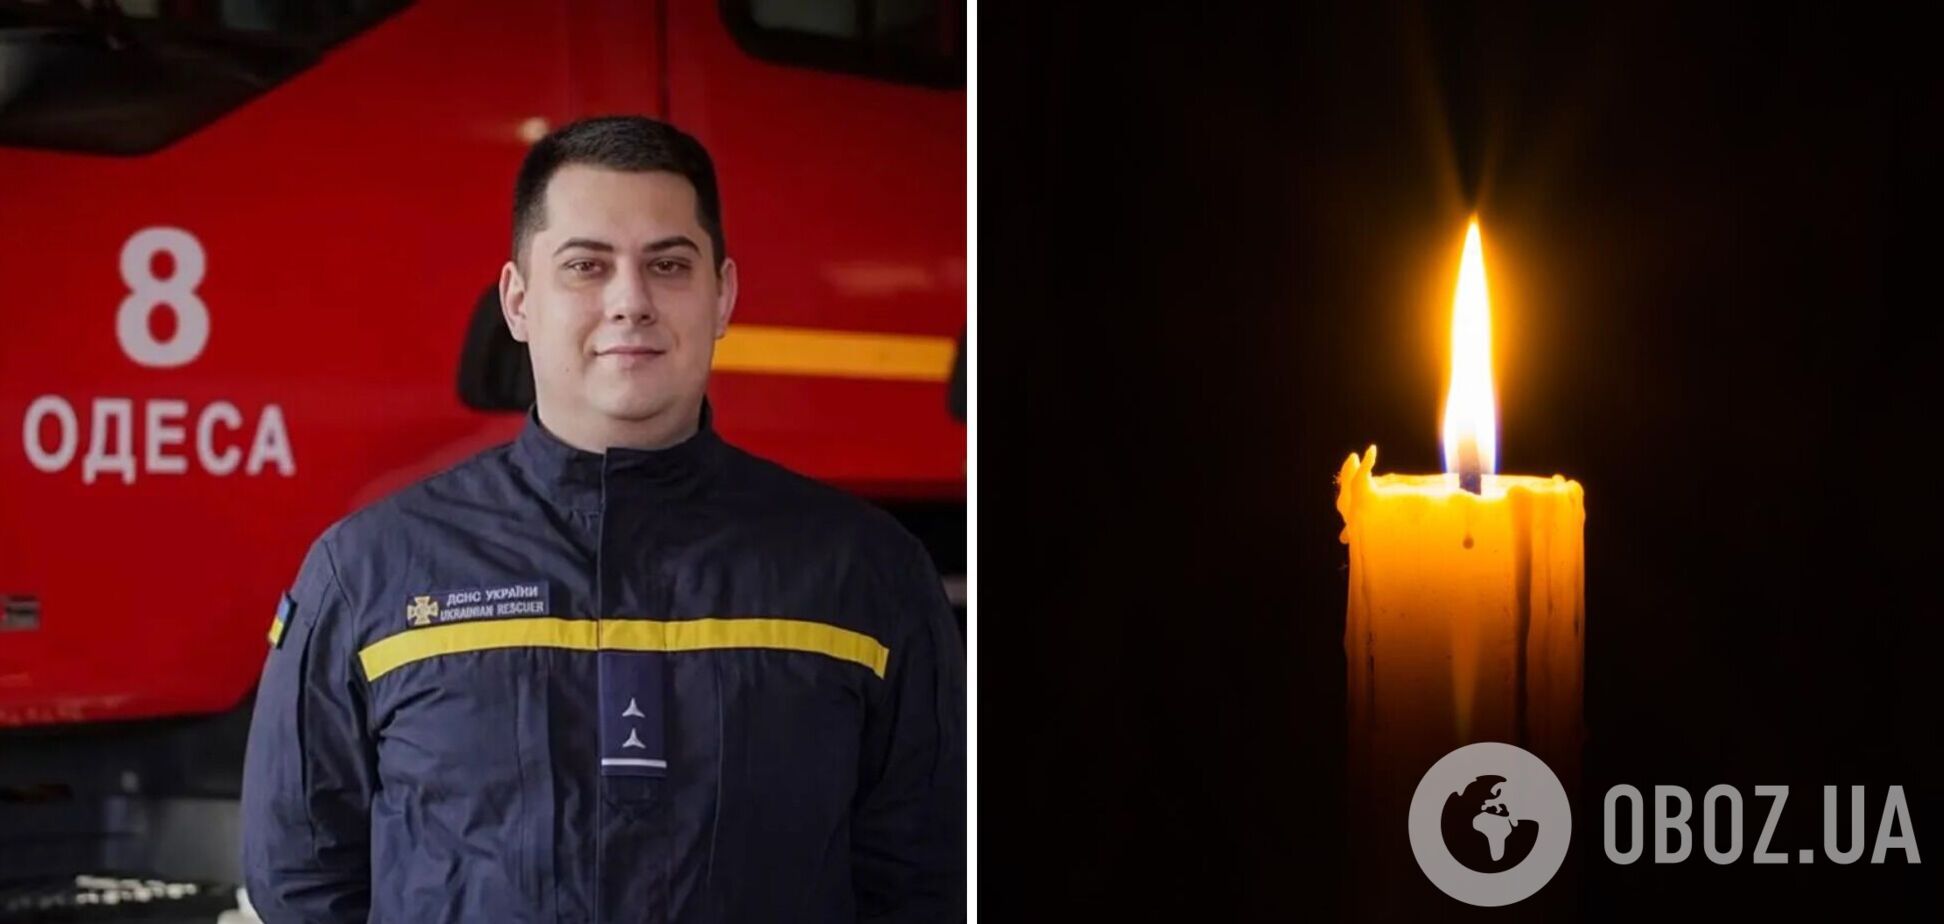 'Працював командиром відділення': під час ліквідації пожежі в центрі Одеси загинув рятувальник Антон Халіков. Фото